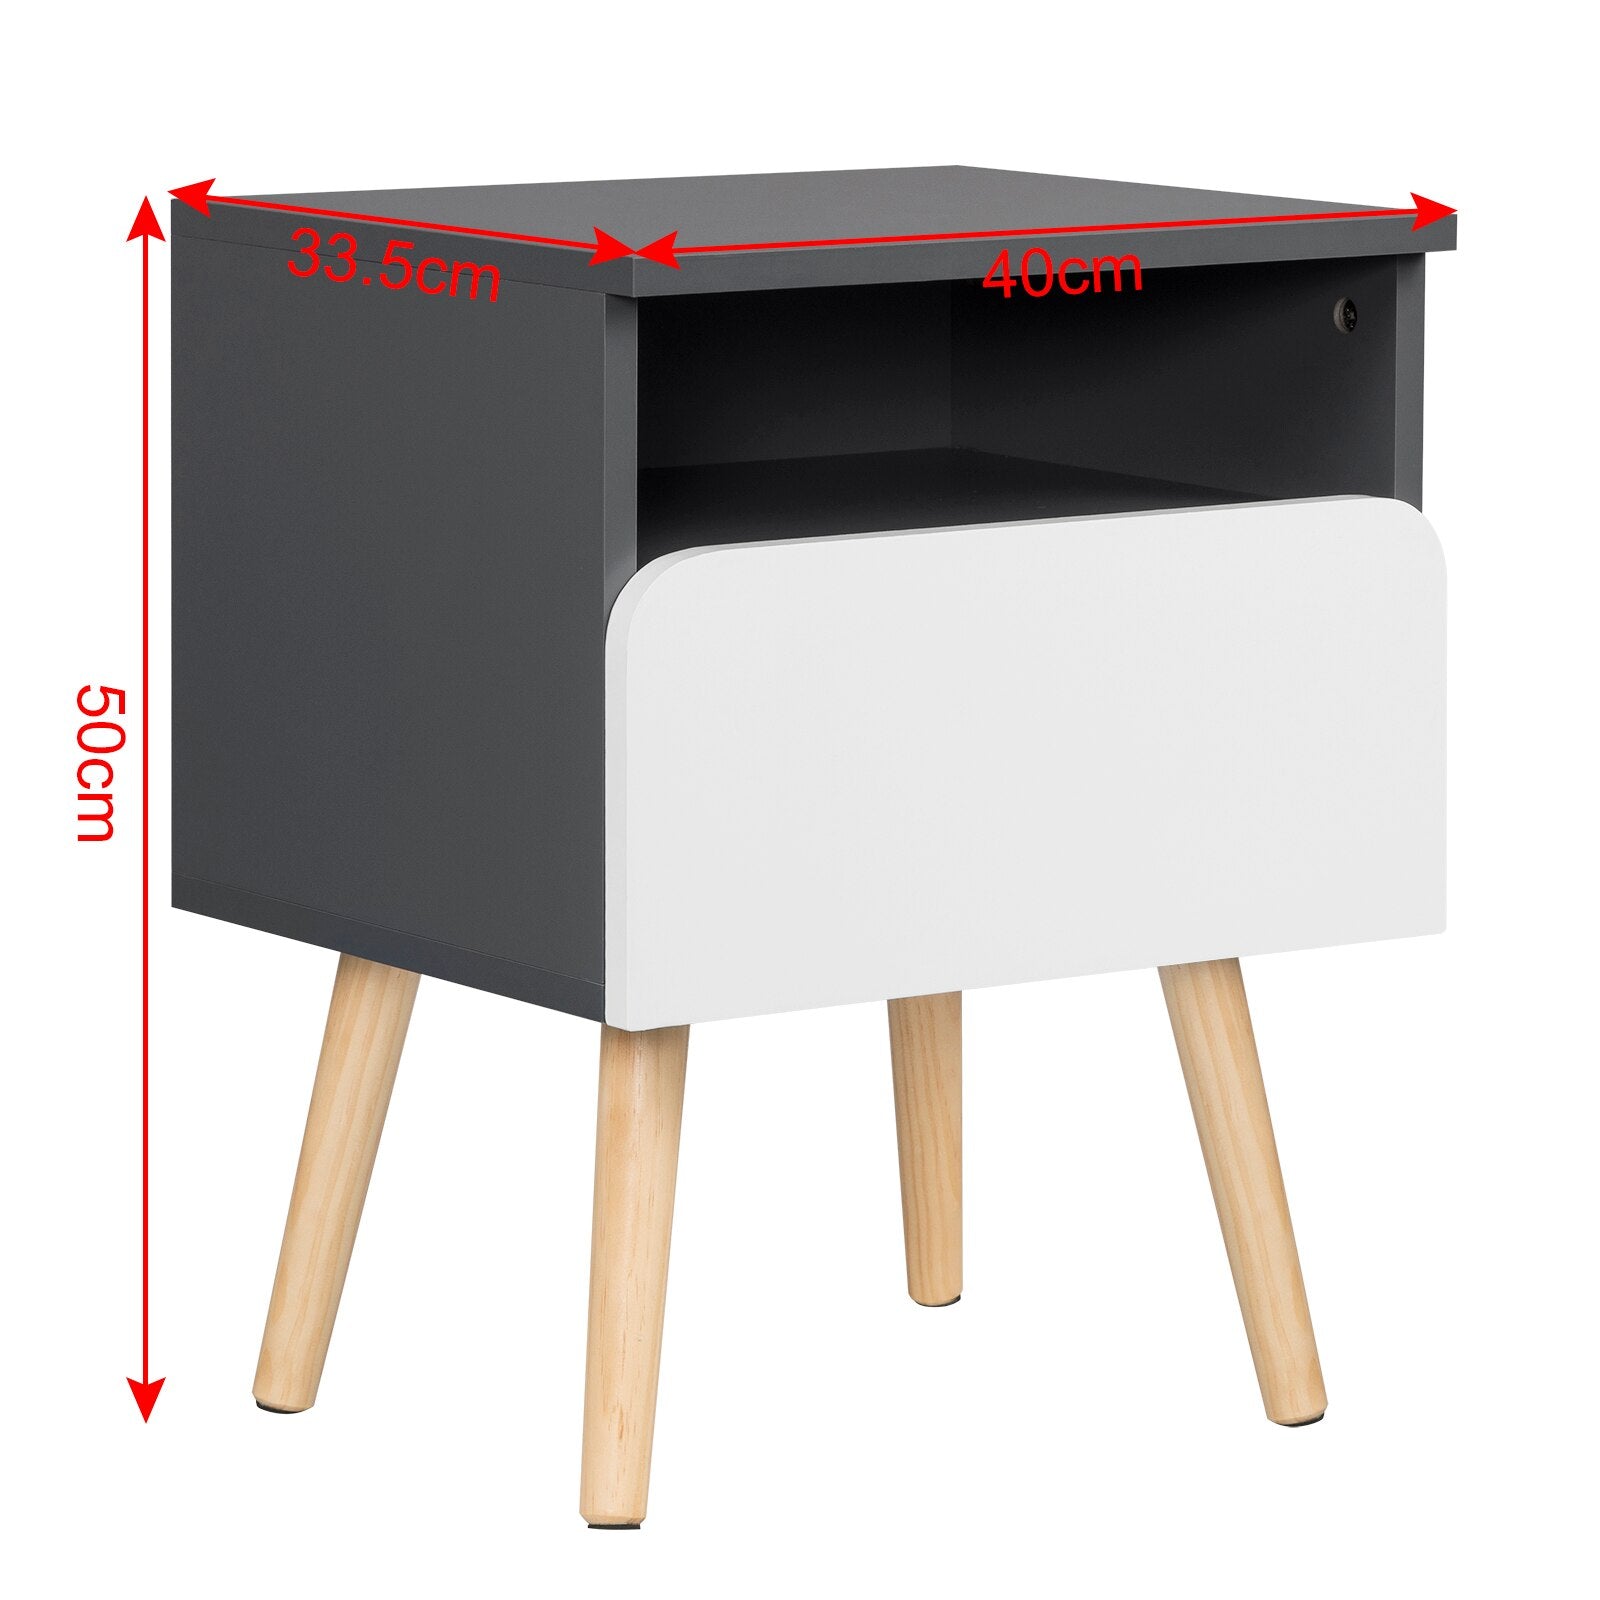 2 teiliges Nachttisch mit Schublade und offenem Fach - Holz Beistelltisch, praktische Aufbewahrung im Schlafzimmer - Unique Outlet